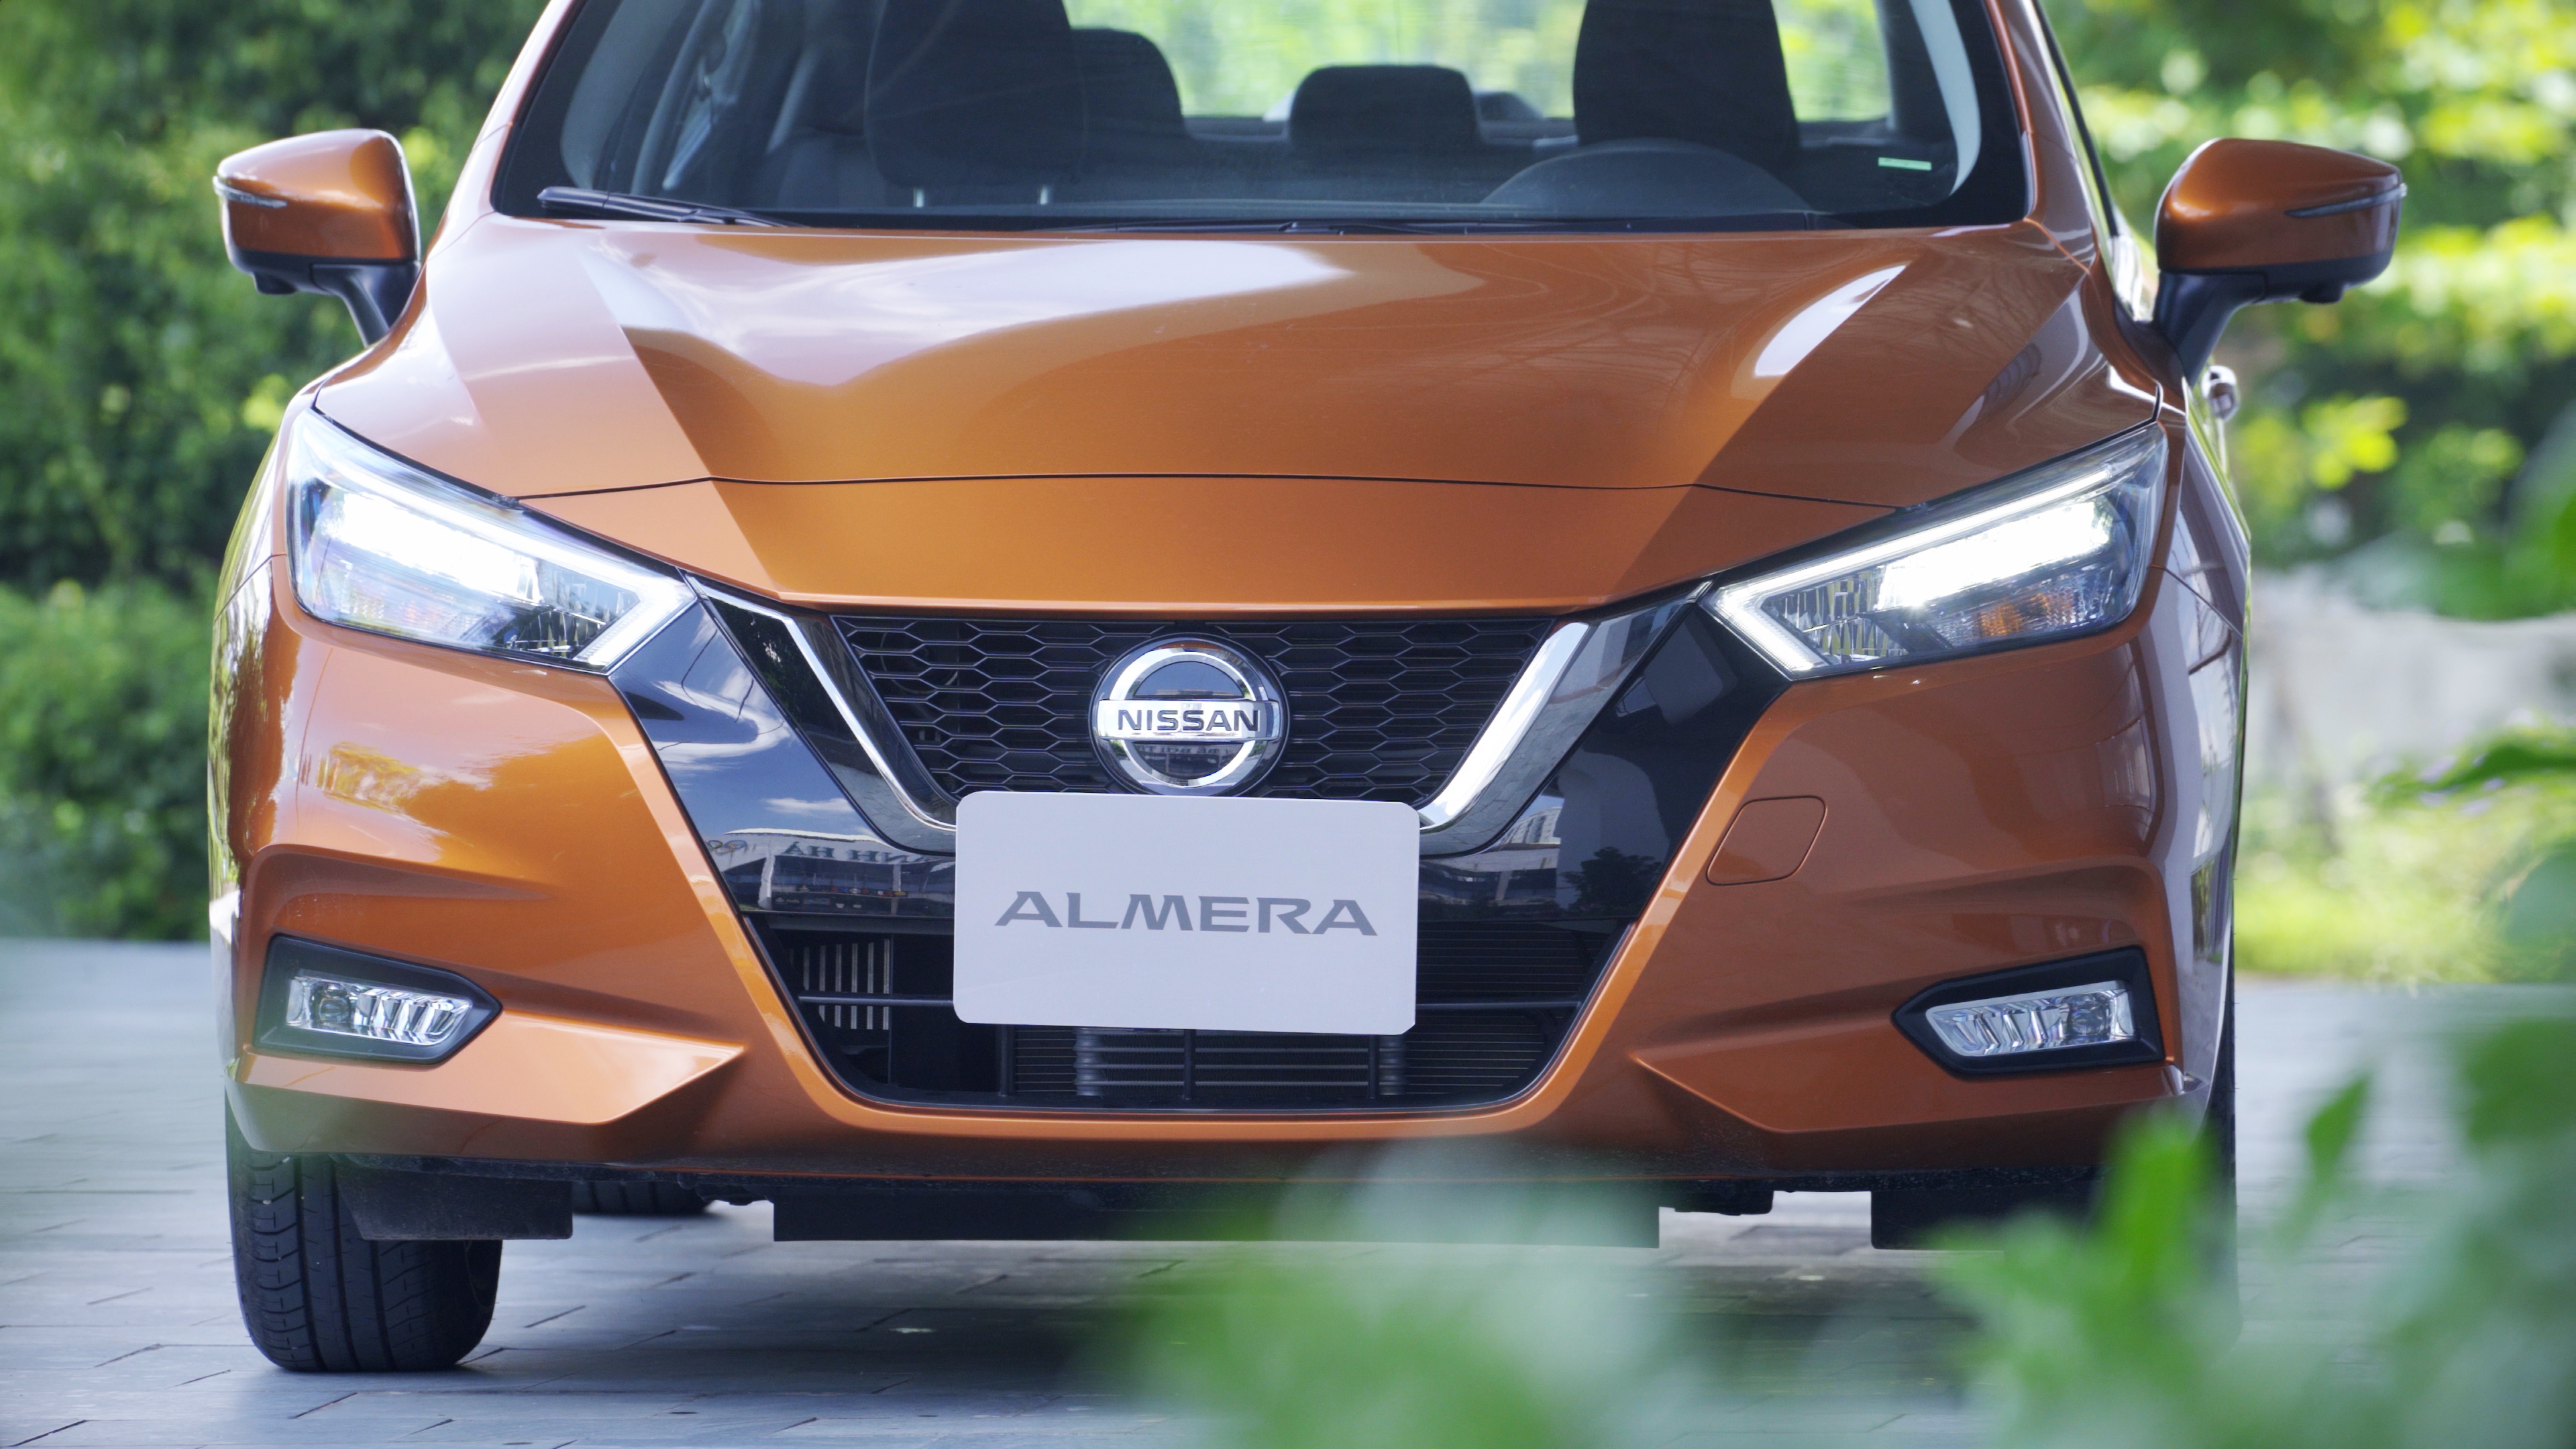 Đánh giá Nissan Almera 2021: Động cơ 1.0L Turbo liệu có yếu? nissan-almera-2021-7.jpg